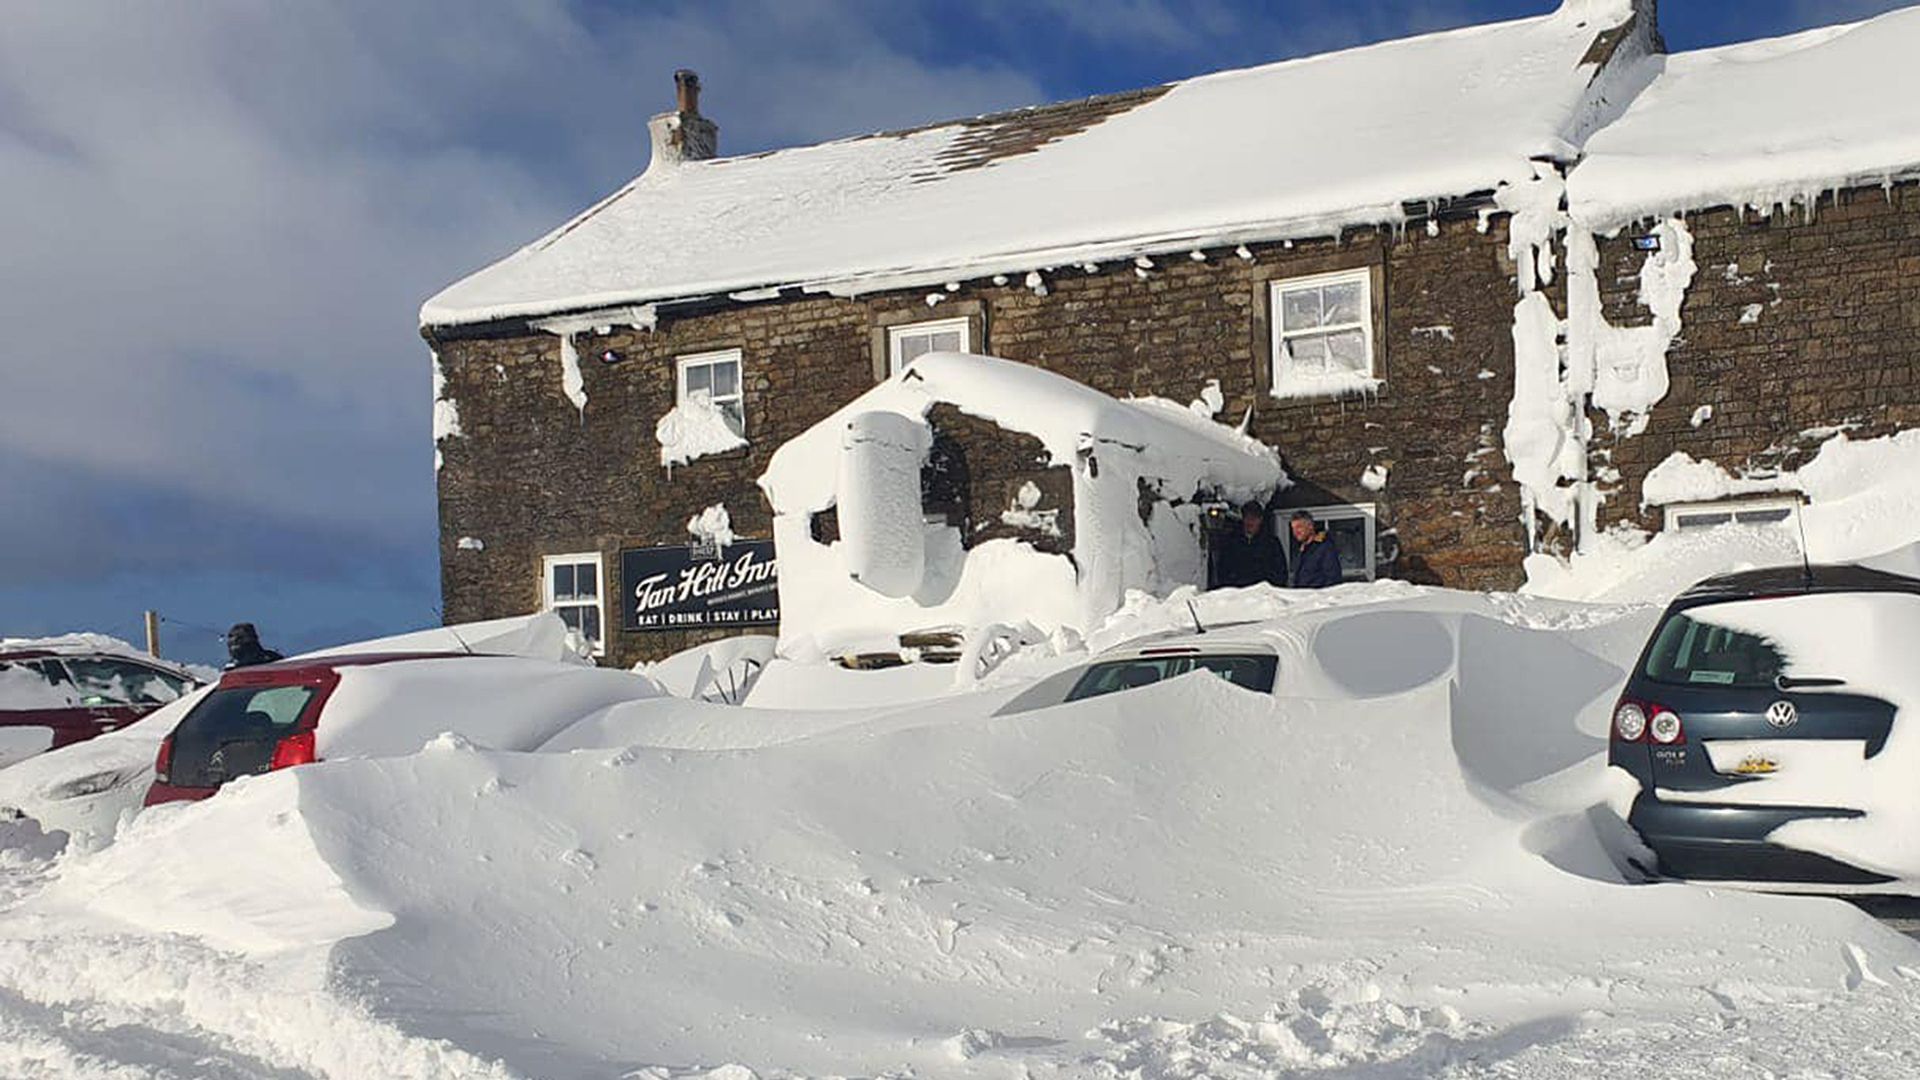 Schnee liegt um den eingeschneiten Pub "Tan Hill Inn" im nordenglischen Nationalpark Yorkshire Dales herum. | dpa